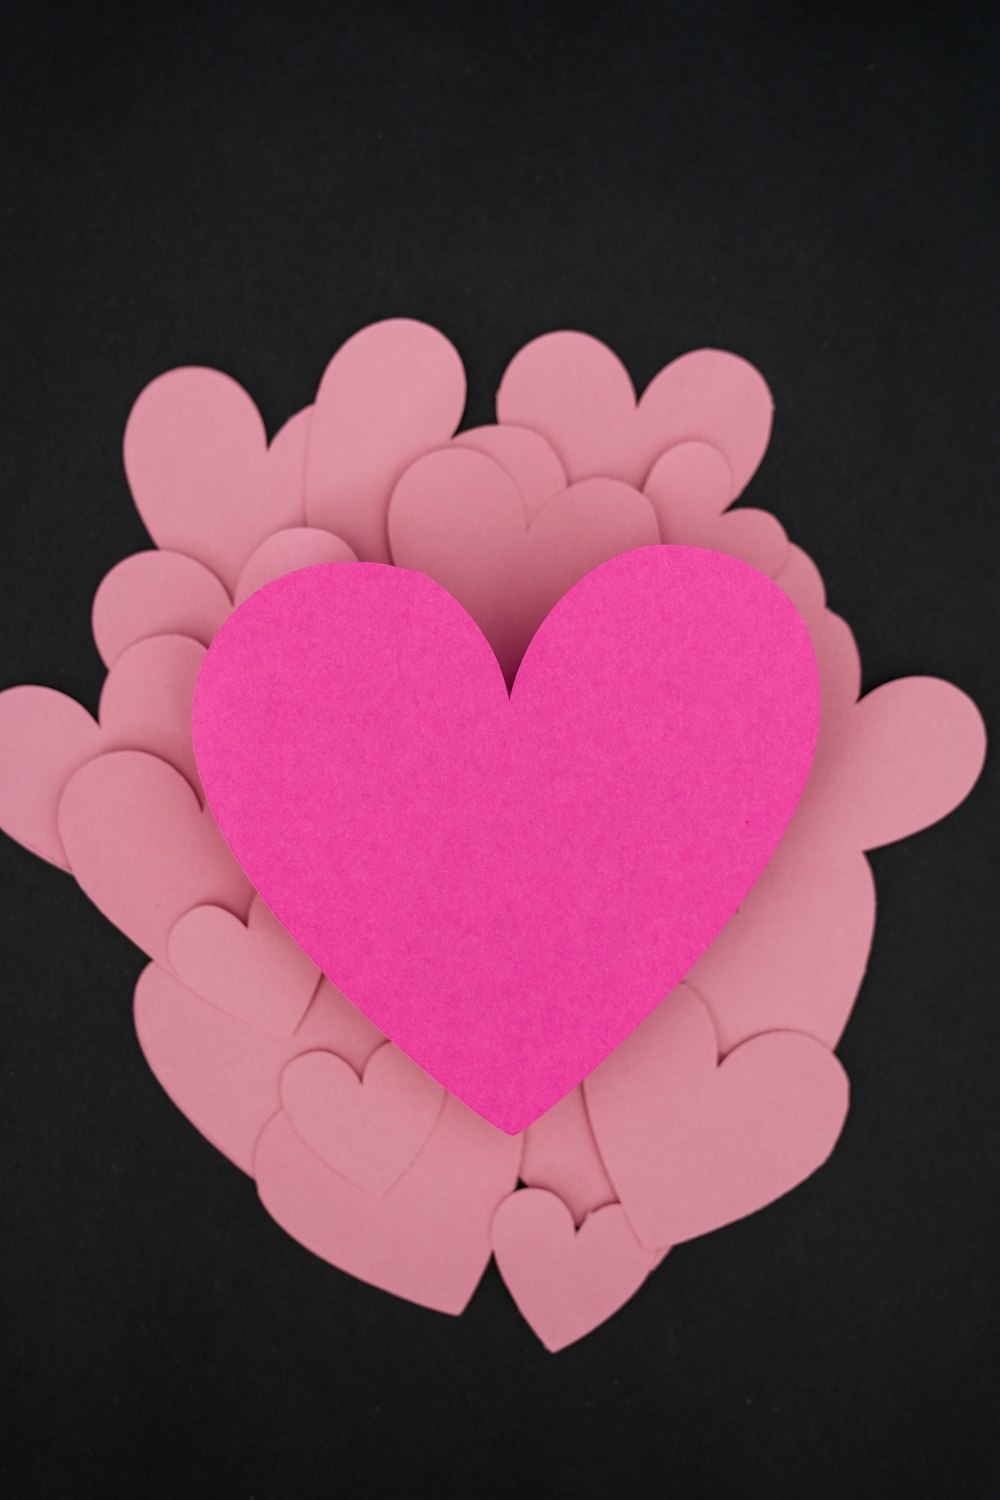 Un corazón rosa rodeado de corazones rosados sobre un fondo negro